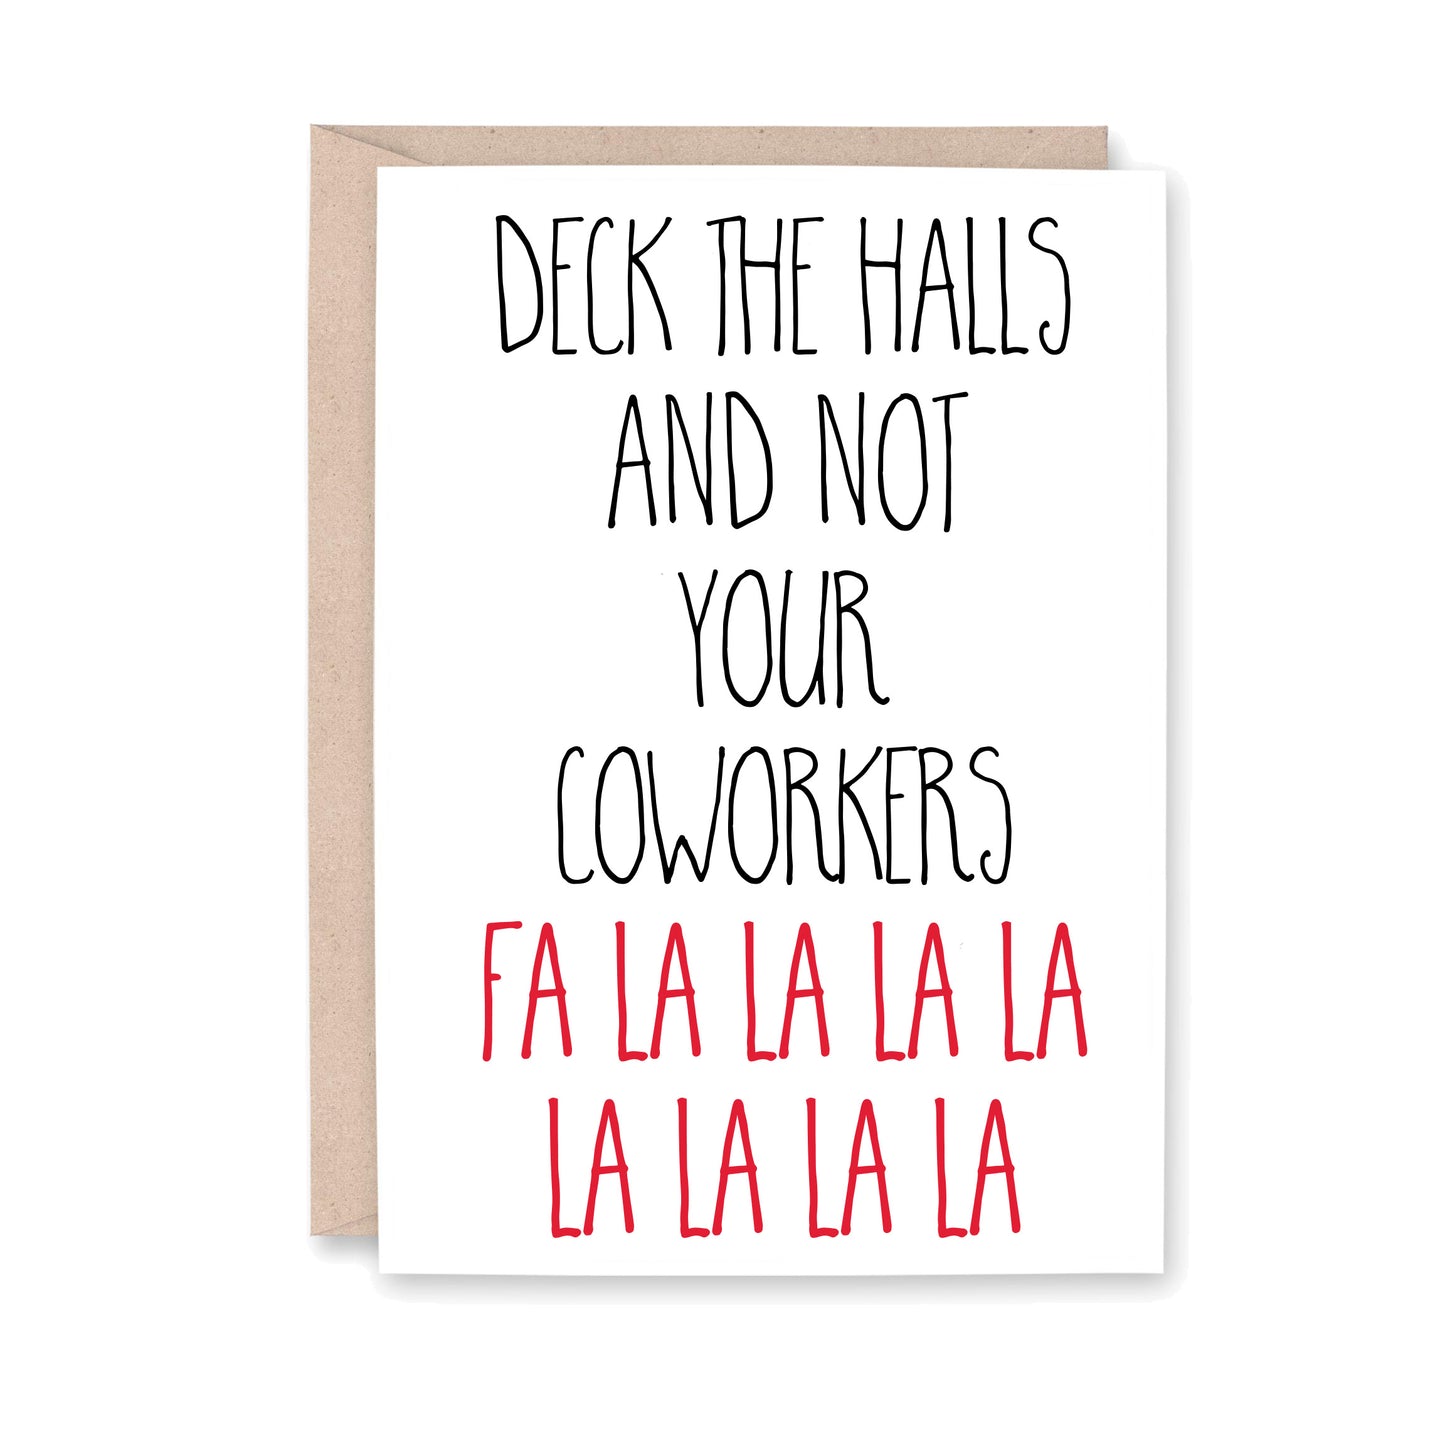 Deck the halls and not your coworkers fa la la la la la la la la